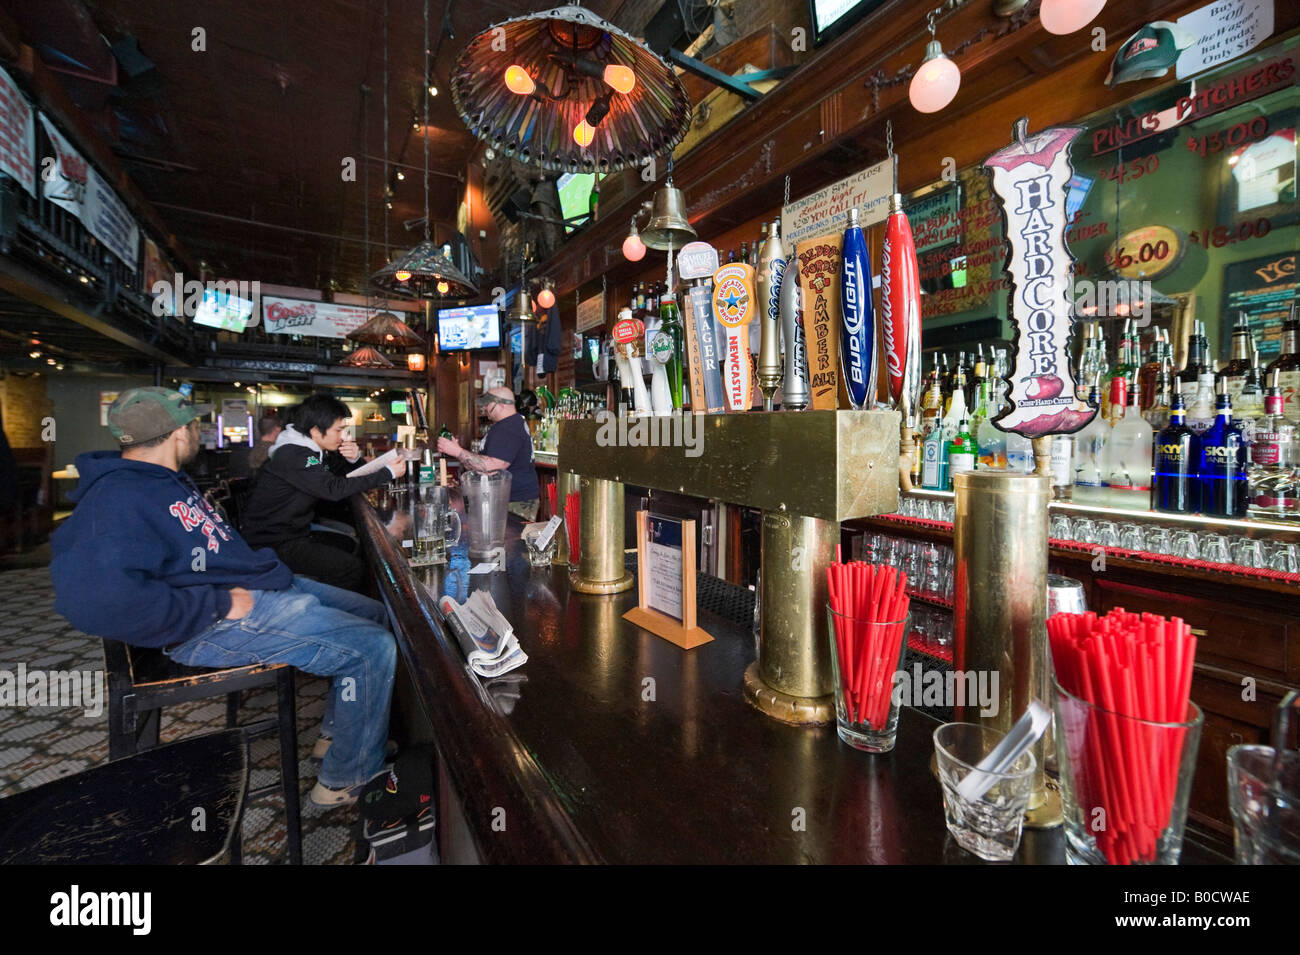 New york bar immagini e fotografie stock ad alta risoluzione - Alamy